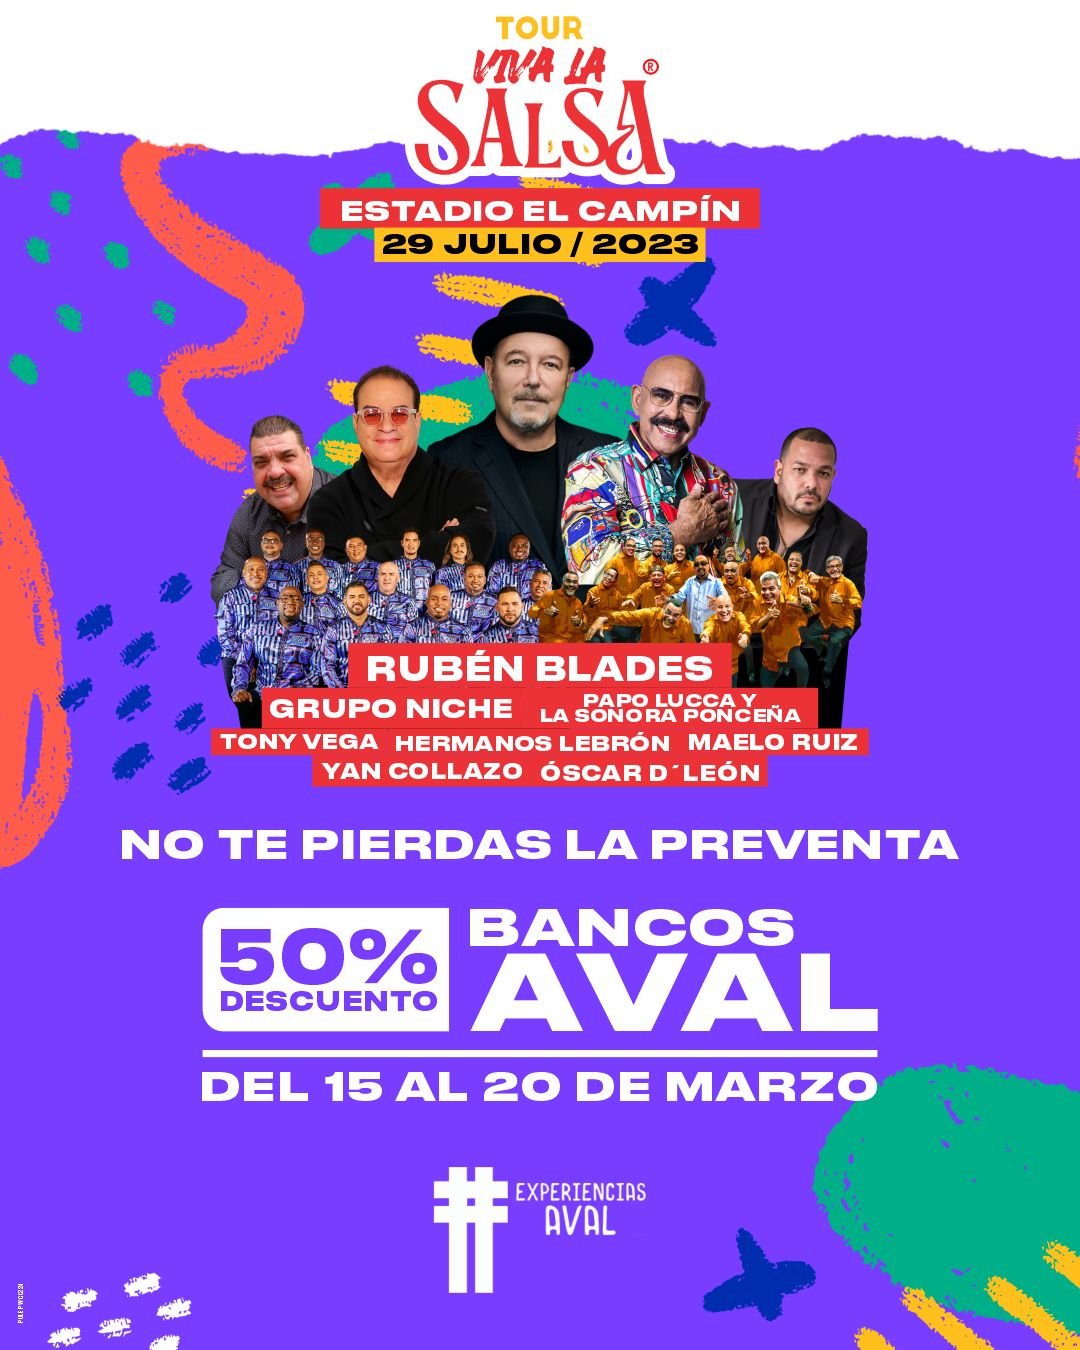 Tour Viva la Salsa en Bogotá y Medellín 2023 El Filtro